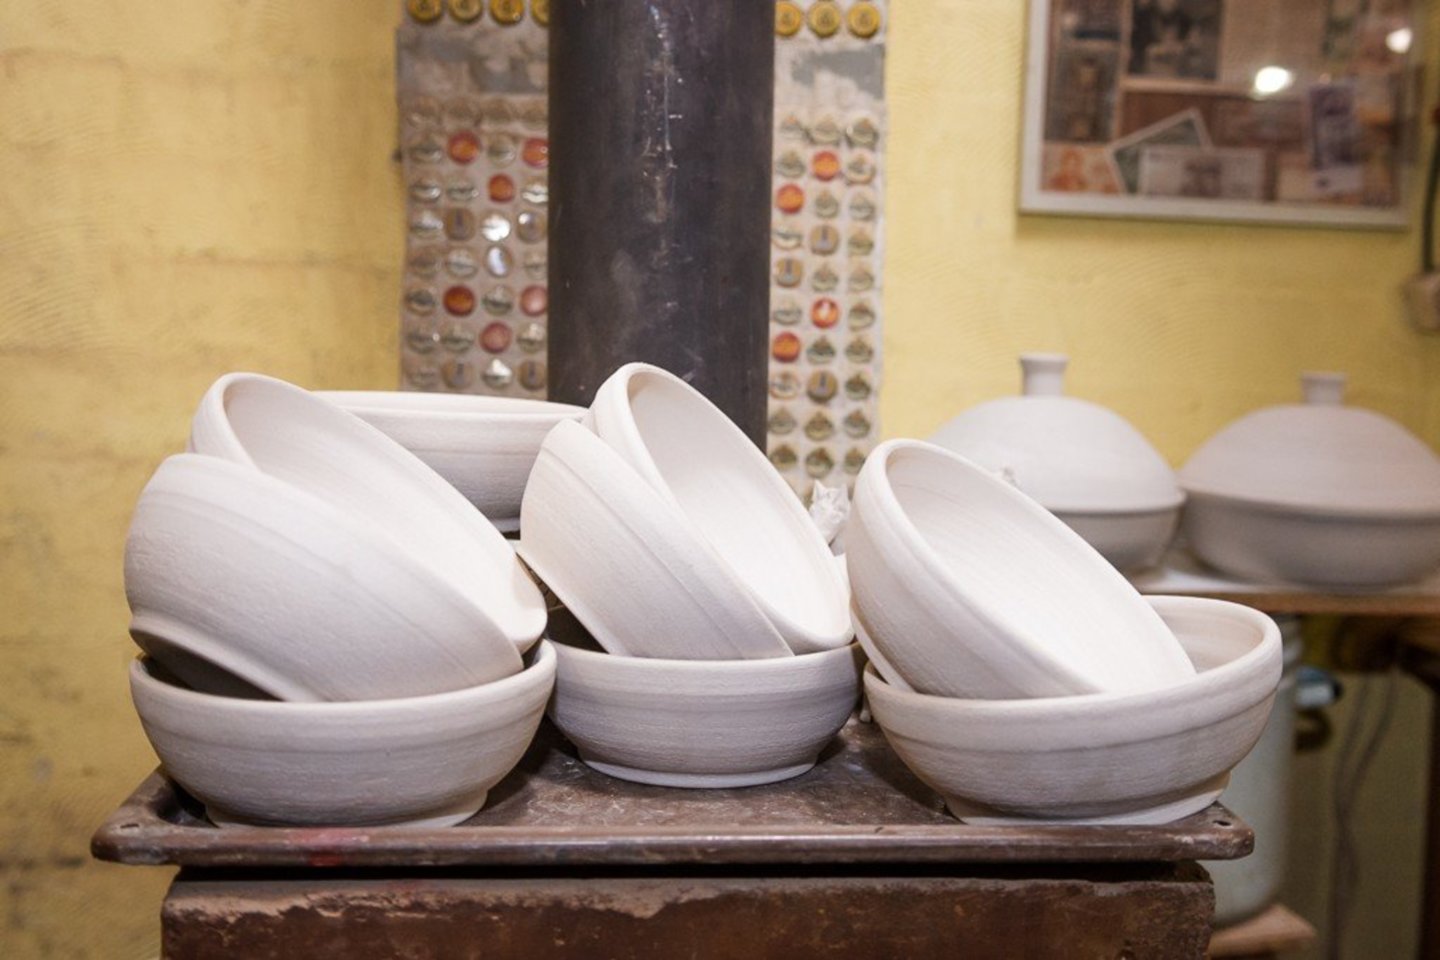  Keramikų Hincų šeima.<br> R.Ančerevičiaus nuotr.